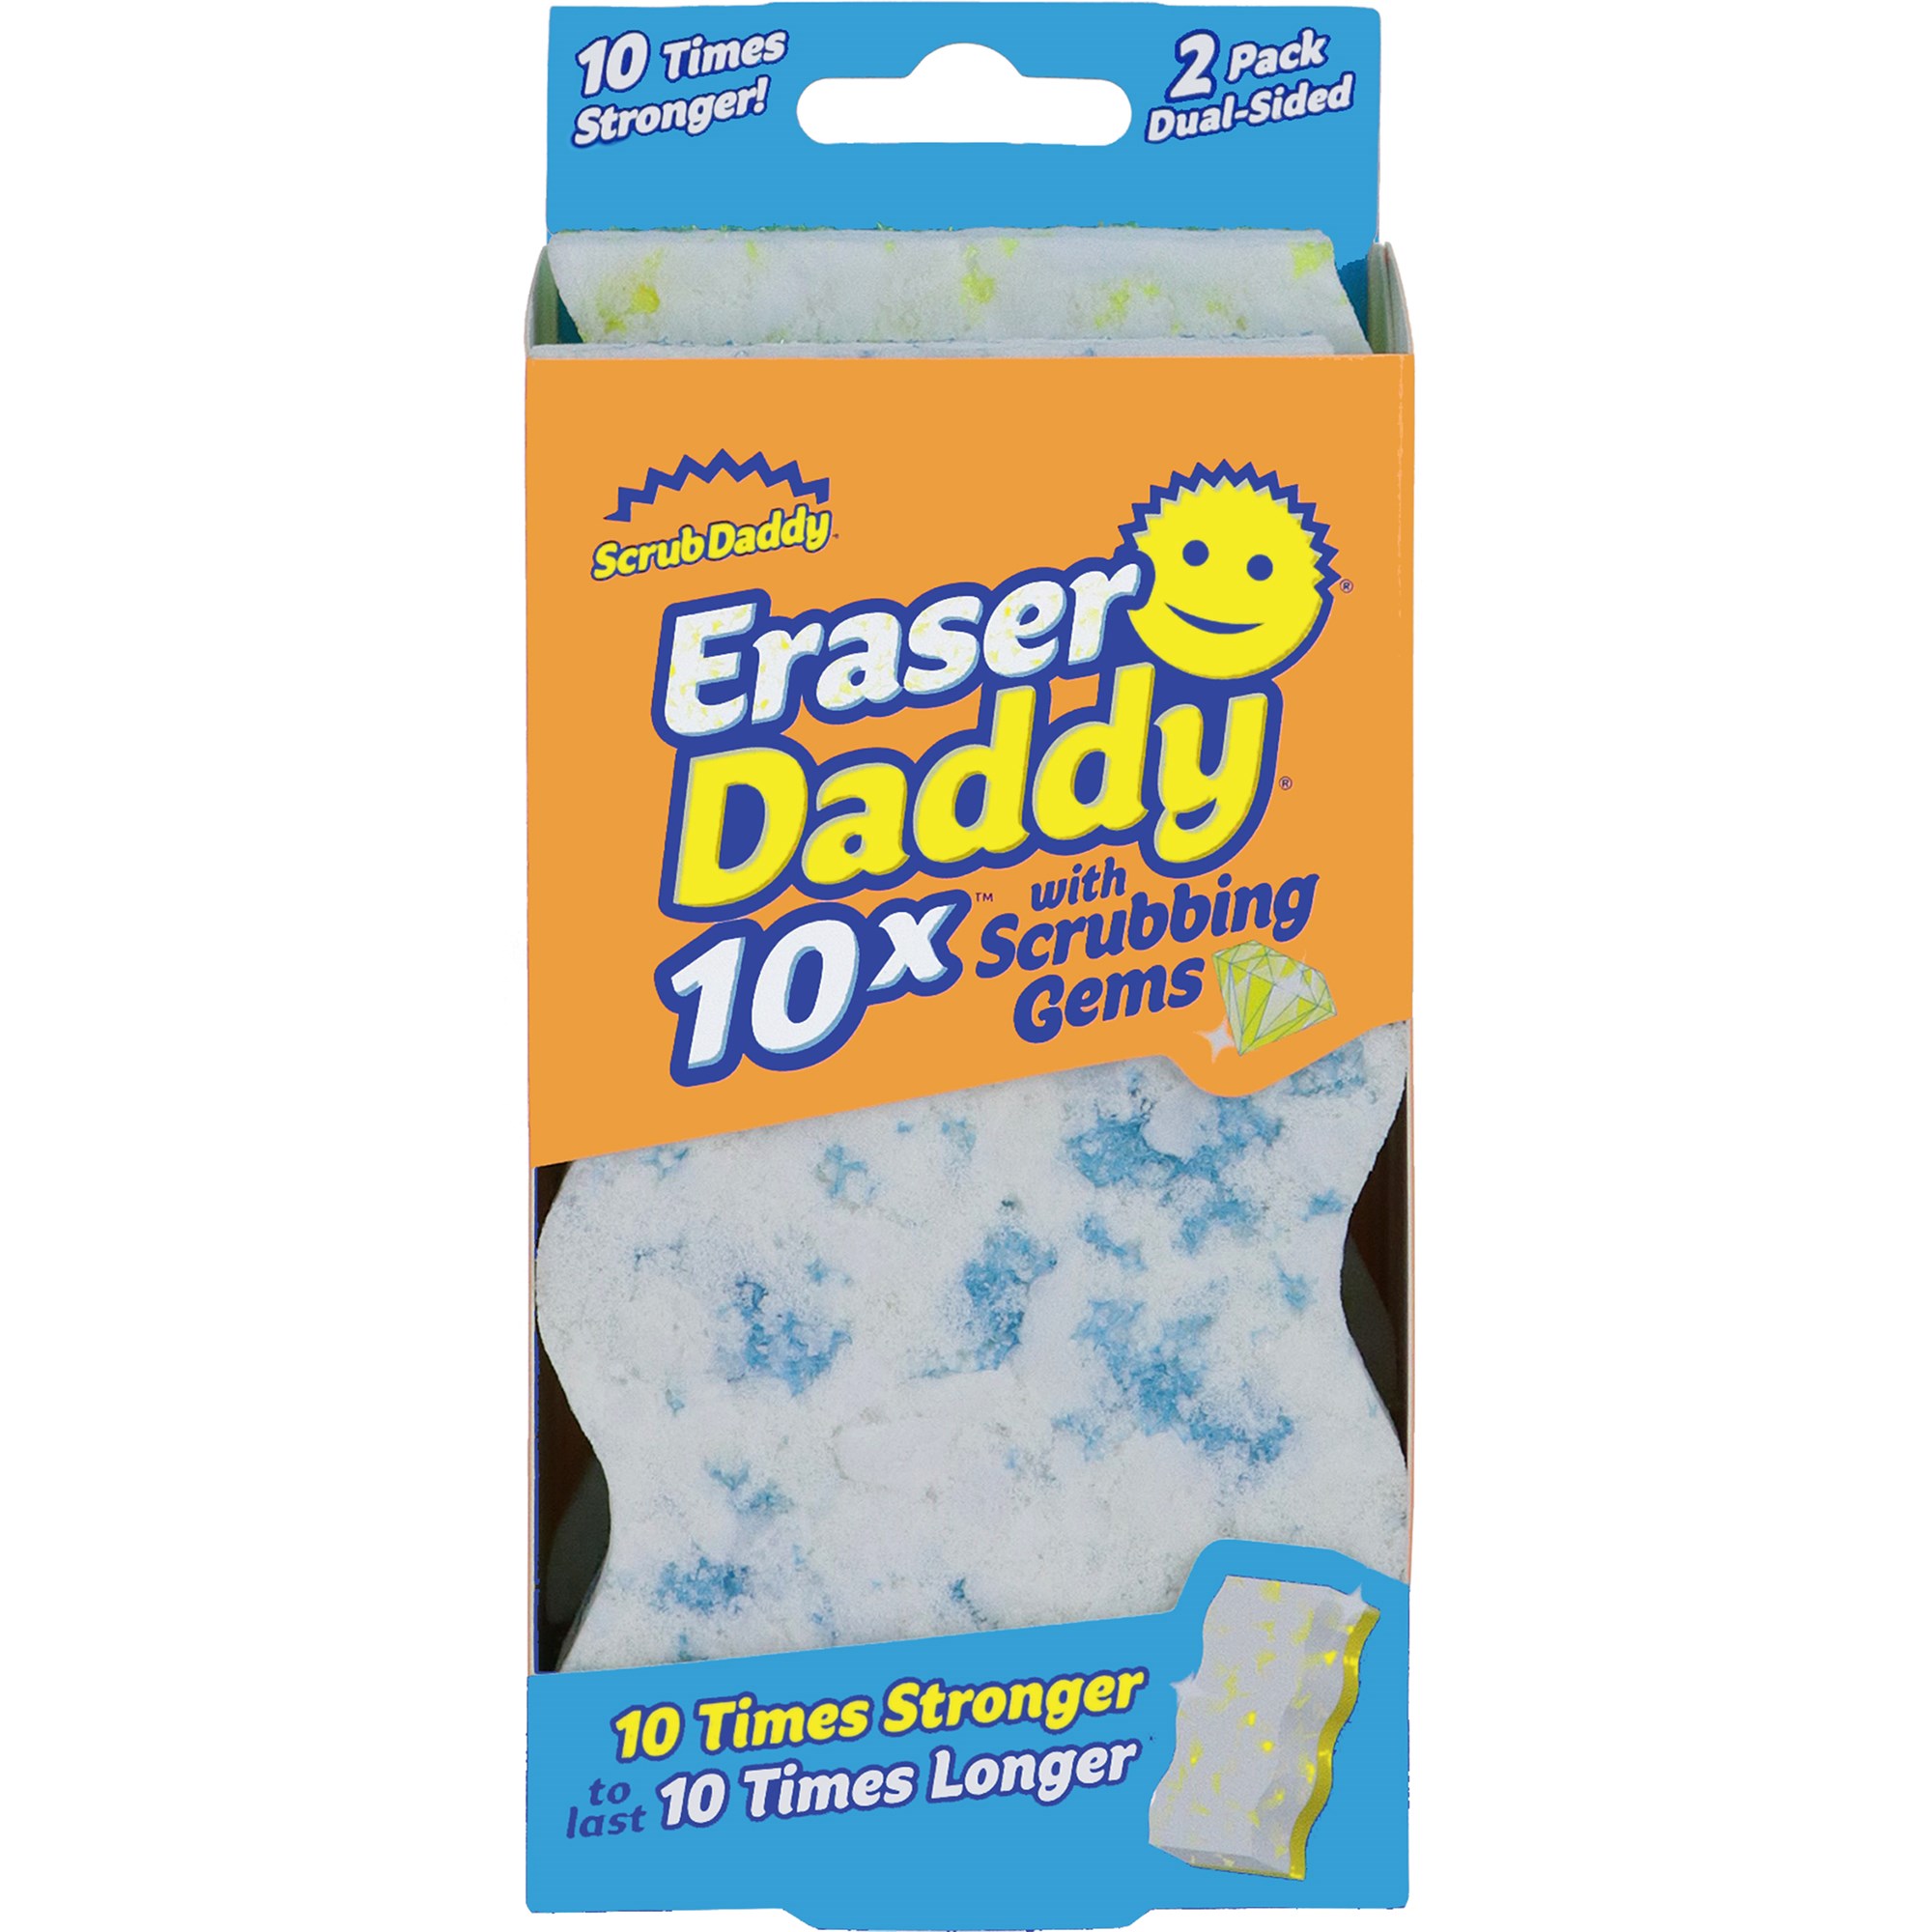 Läs mer om Scrub Daddy Eraser Daddy